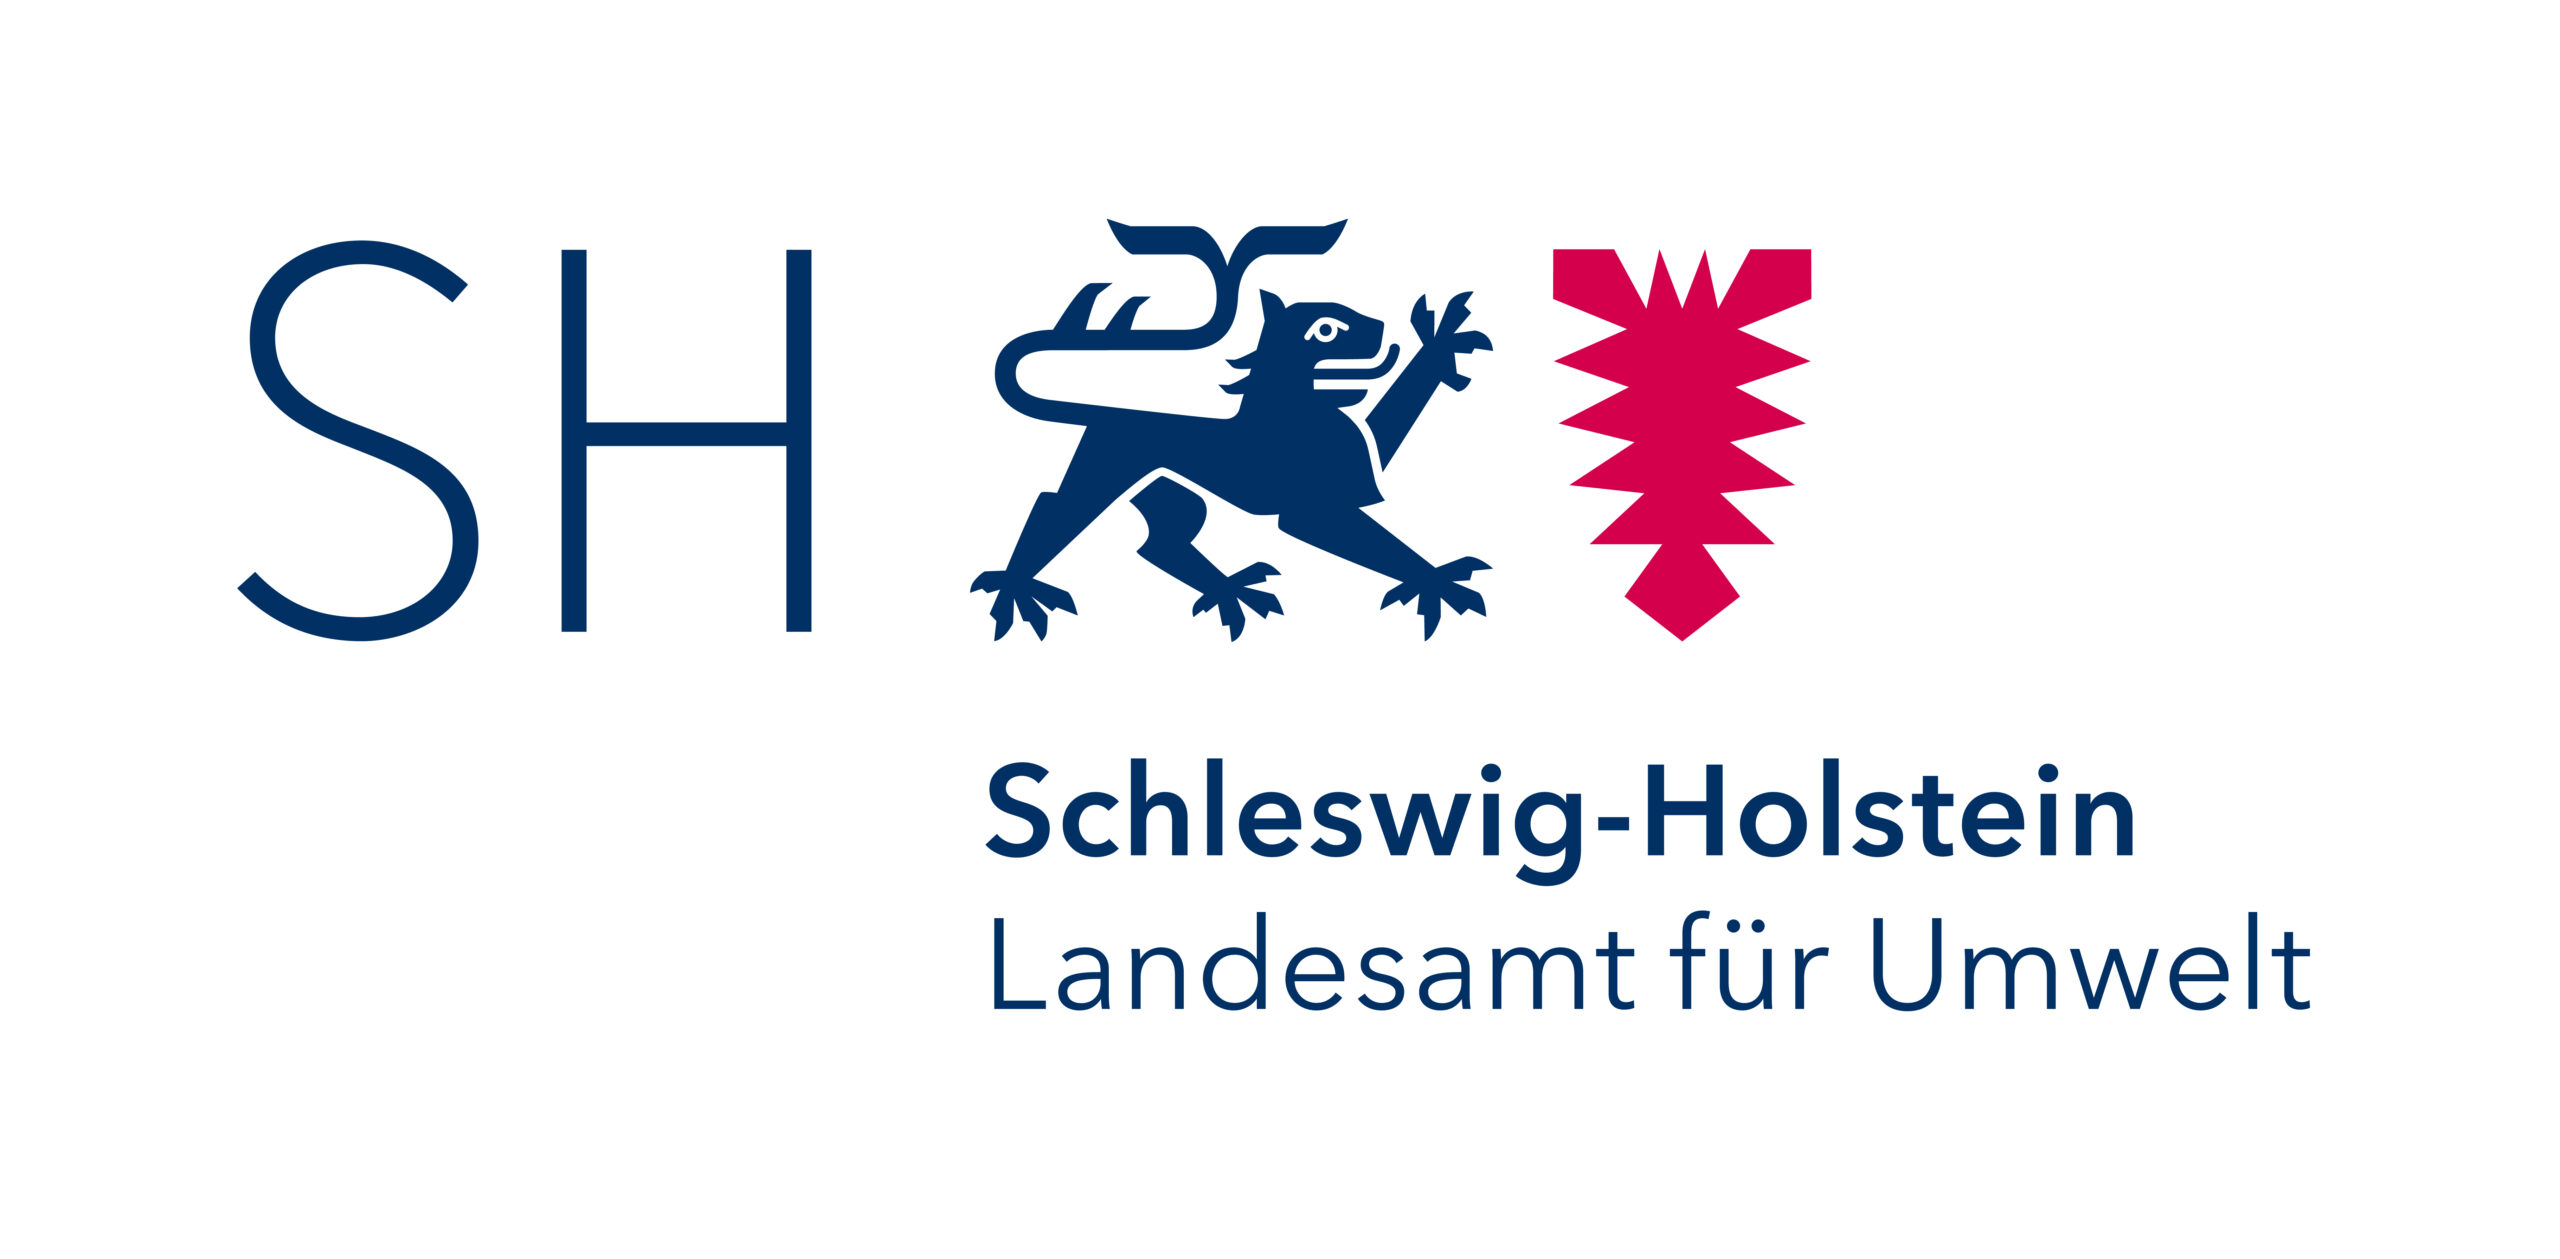 Landesamt für Umwelt des Landes Schleswig-Holstein (LfU)